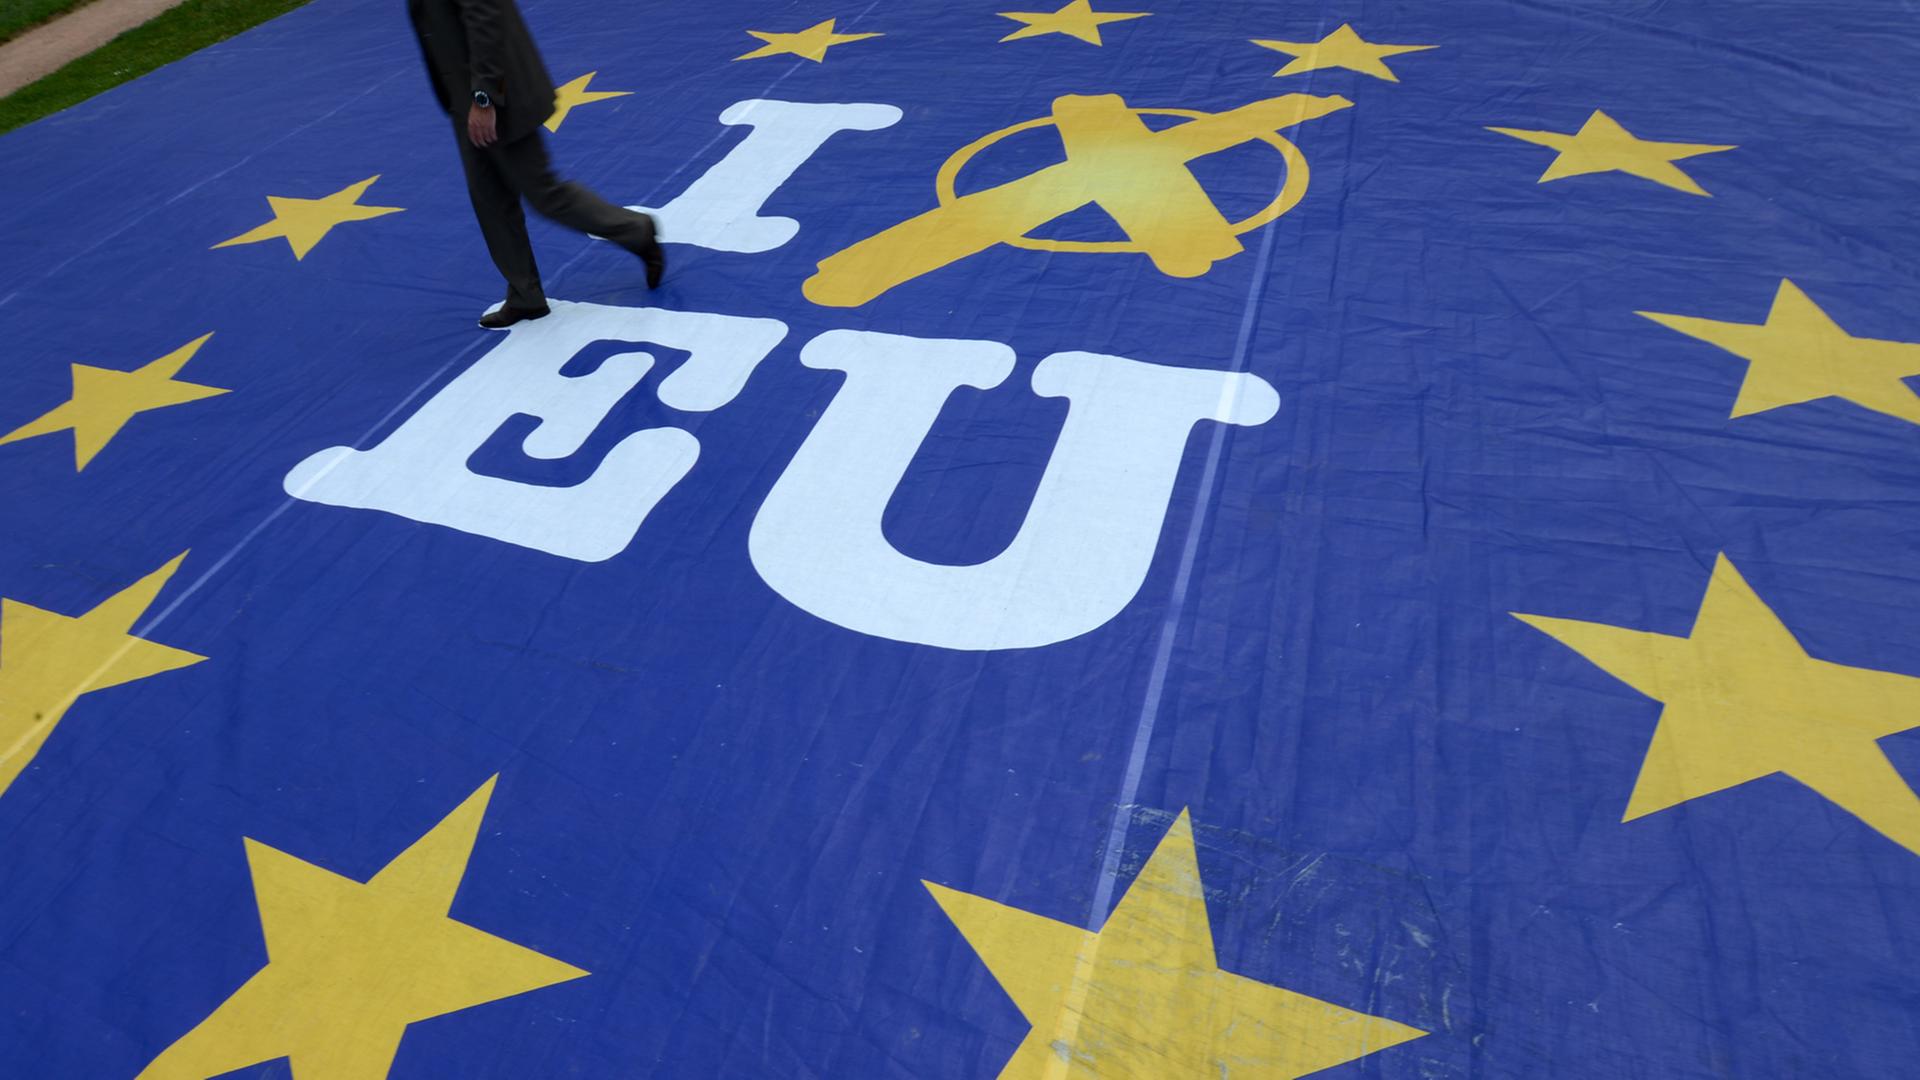 Ein riesiges Banner zeigt auf dem Boden liegend die EU-Flagge mit zwölf gelben Sternen auf blauem Grund, in der Mitte "I vote EU"